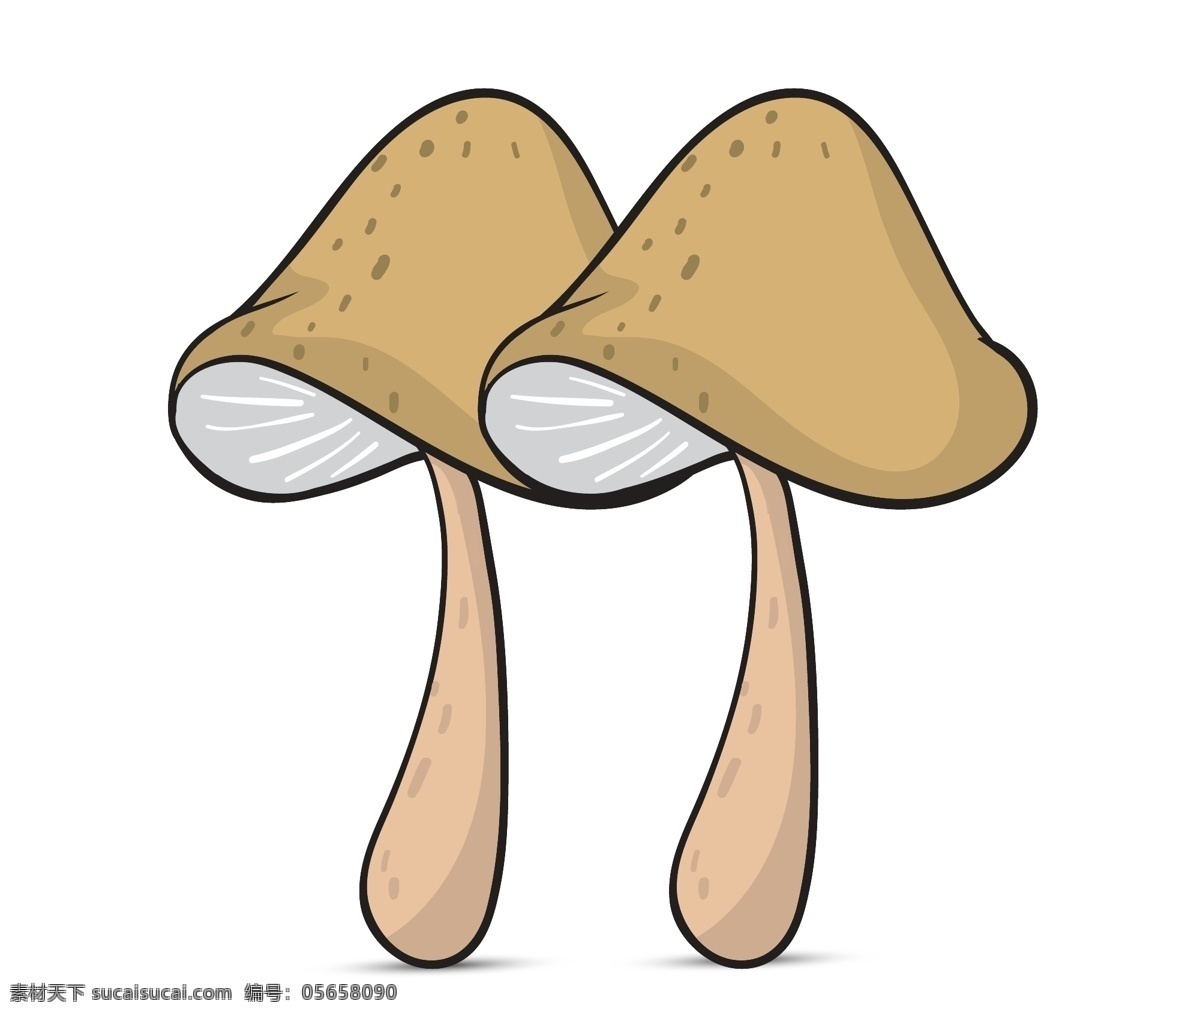 手绘蘑菇 卡通蘑菇 矢量蘑菇 蘑菇 蘑菇素材 菌菇 菌菇素材 菌菇海报 蘑菇海报 元素